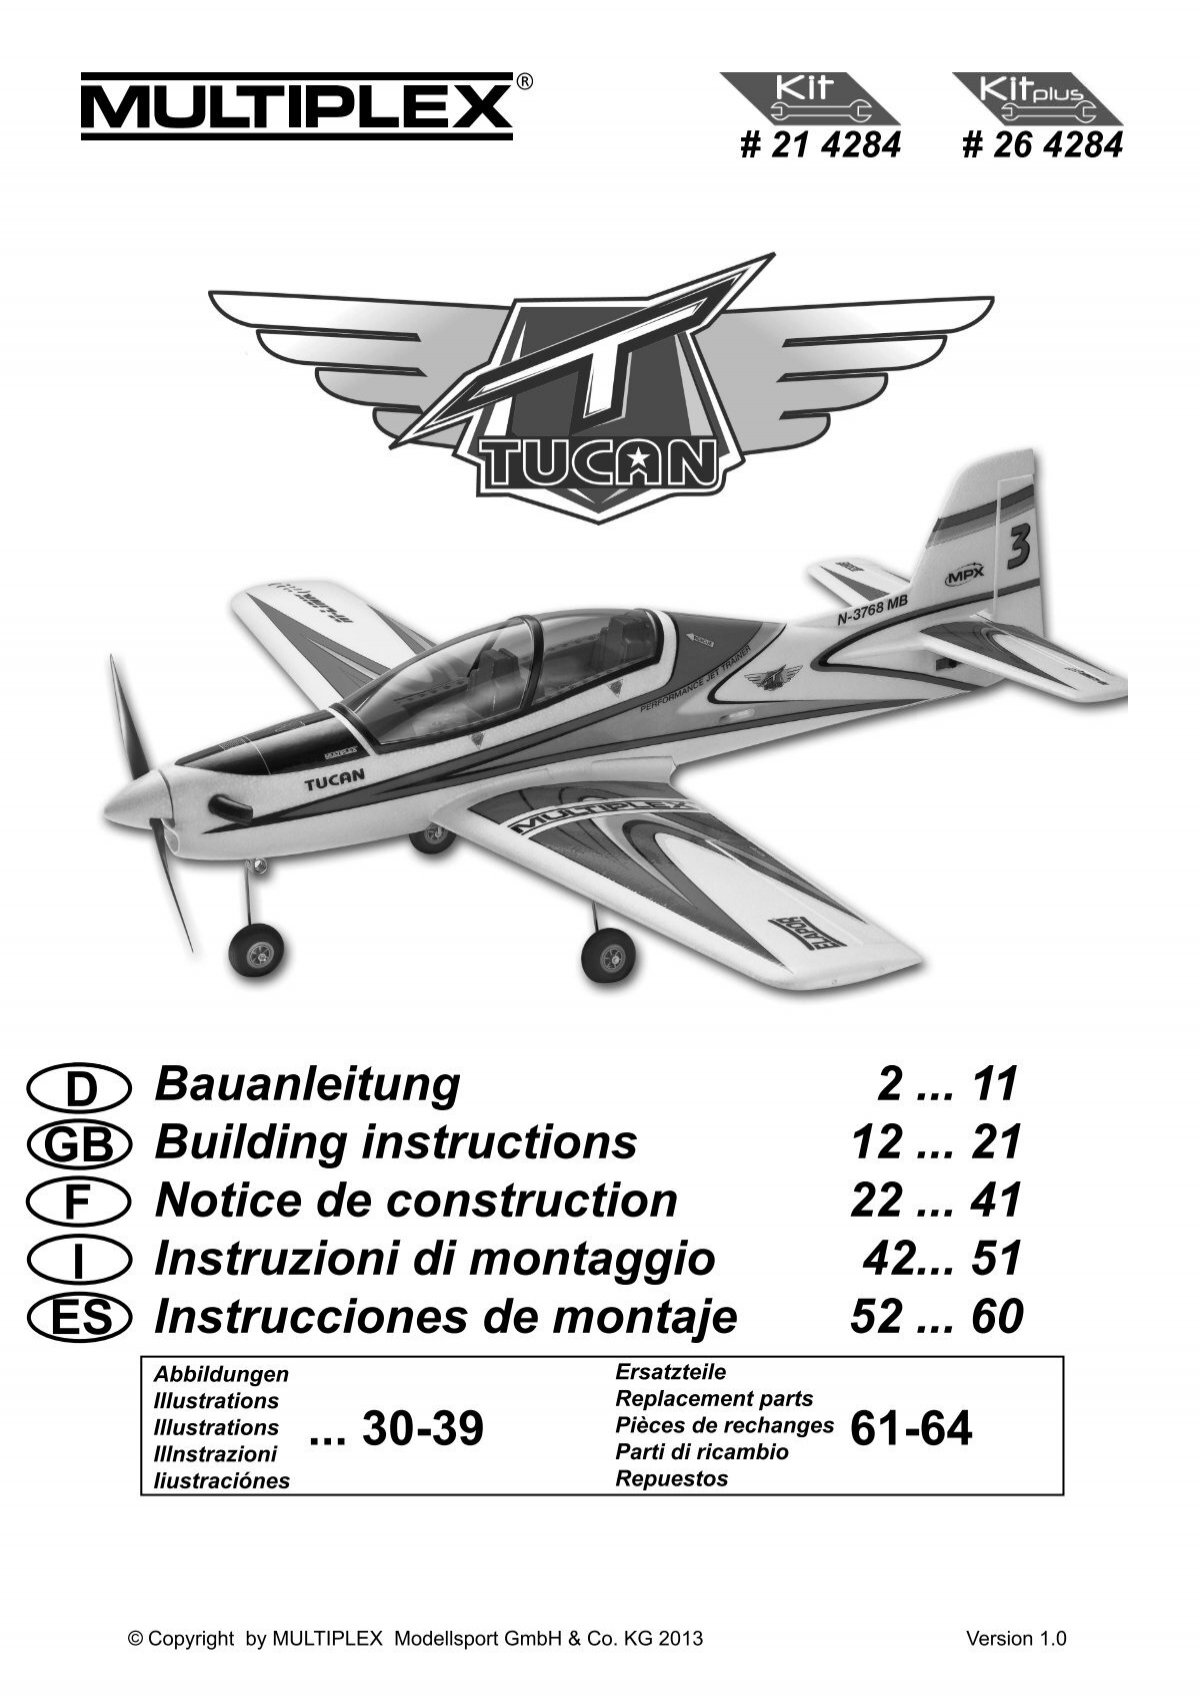 Propeller Wuchtgerät/-Balancer, Multiplex # 332355, Zubehör, Luftschrauben und Mitnehmer